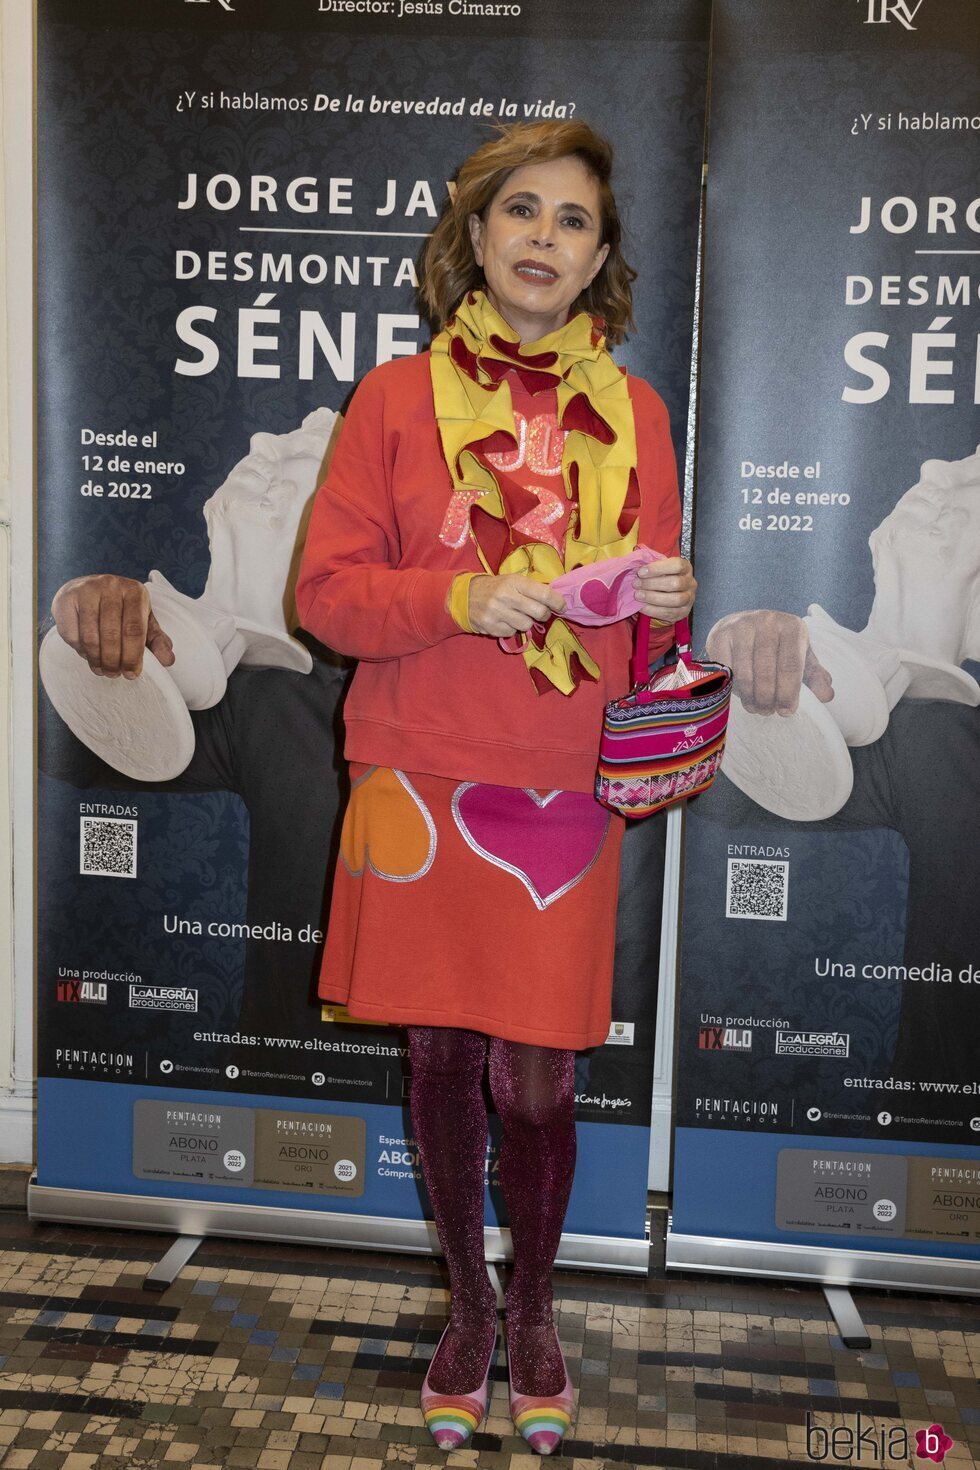 Ágatha Ruiz de la Prada en el estreno de la obra de teatro de Jorge Javier Vázquez 'Desmontando a Séneca'